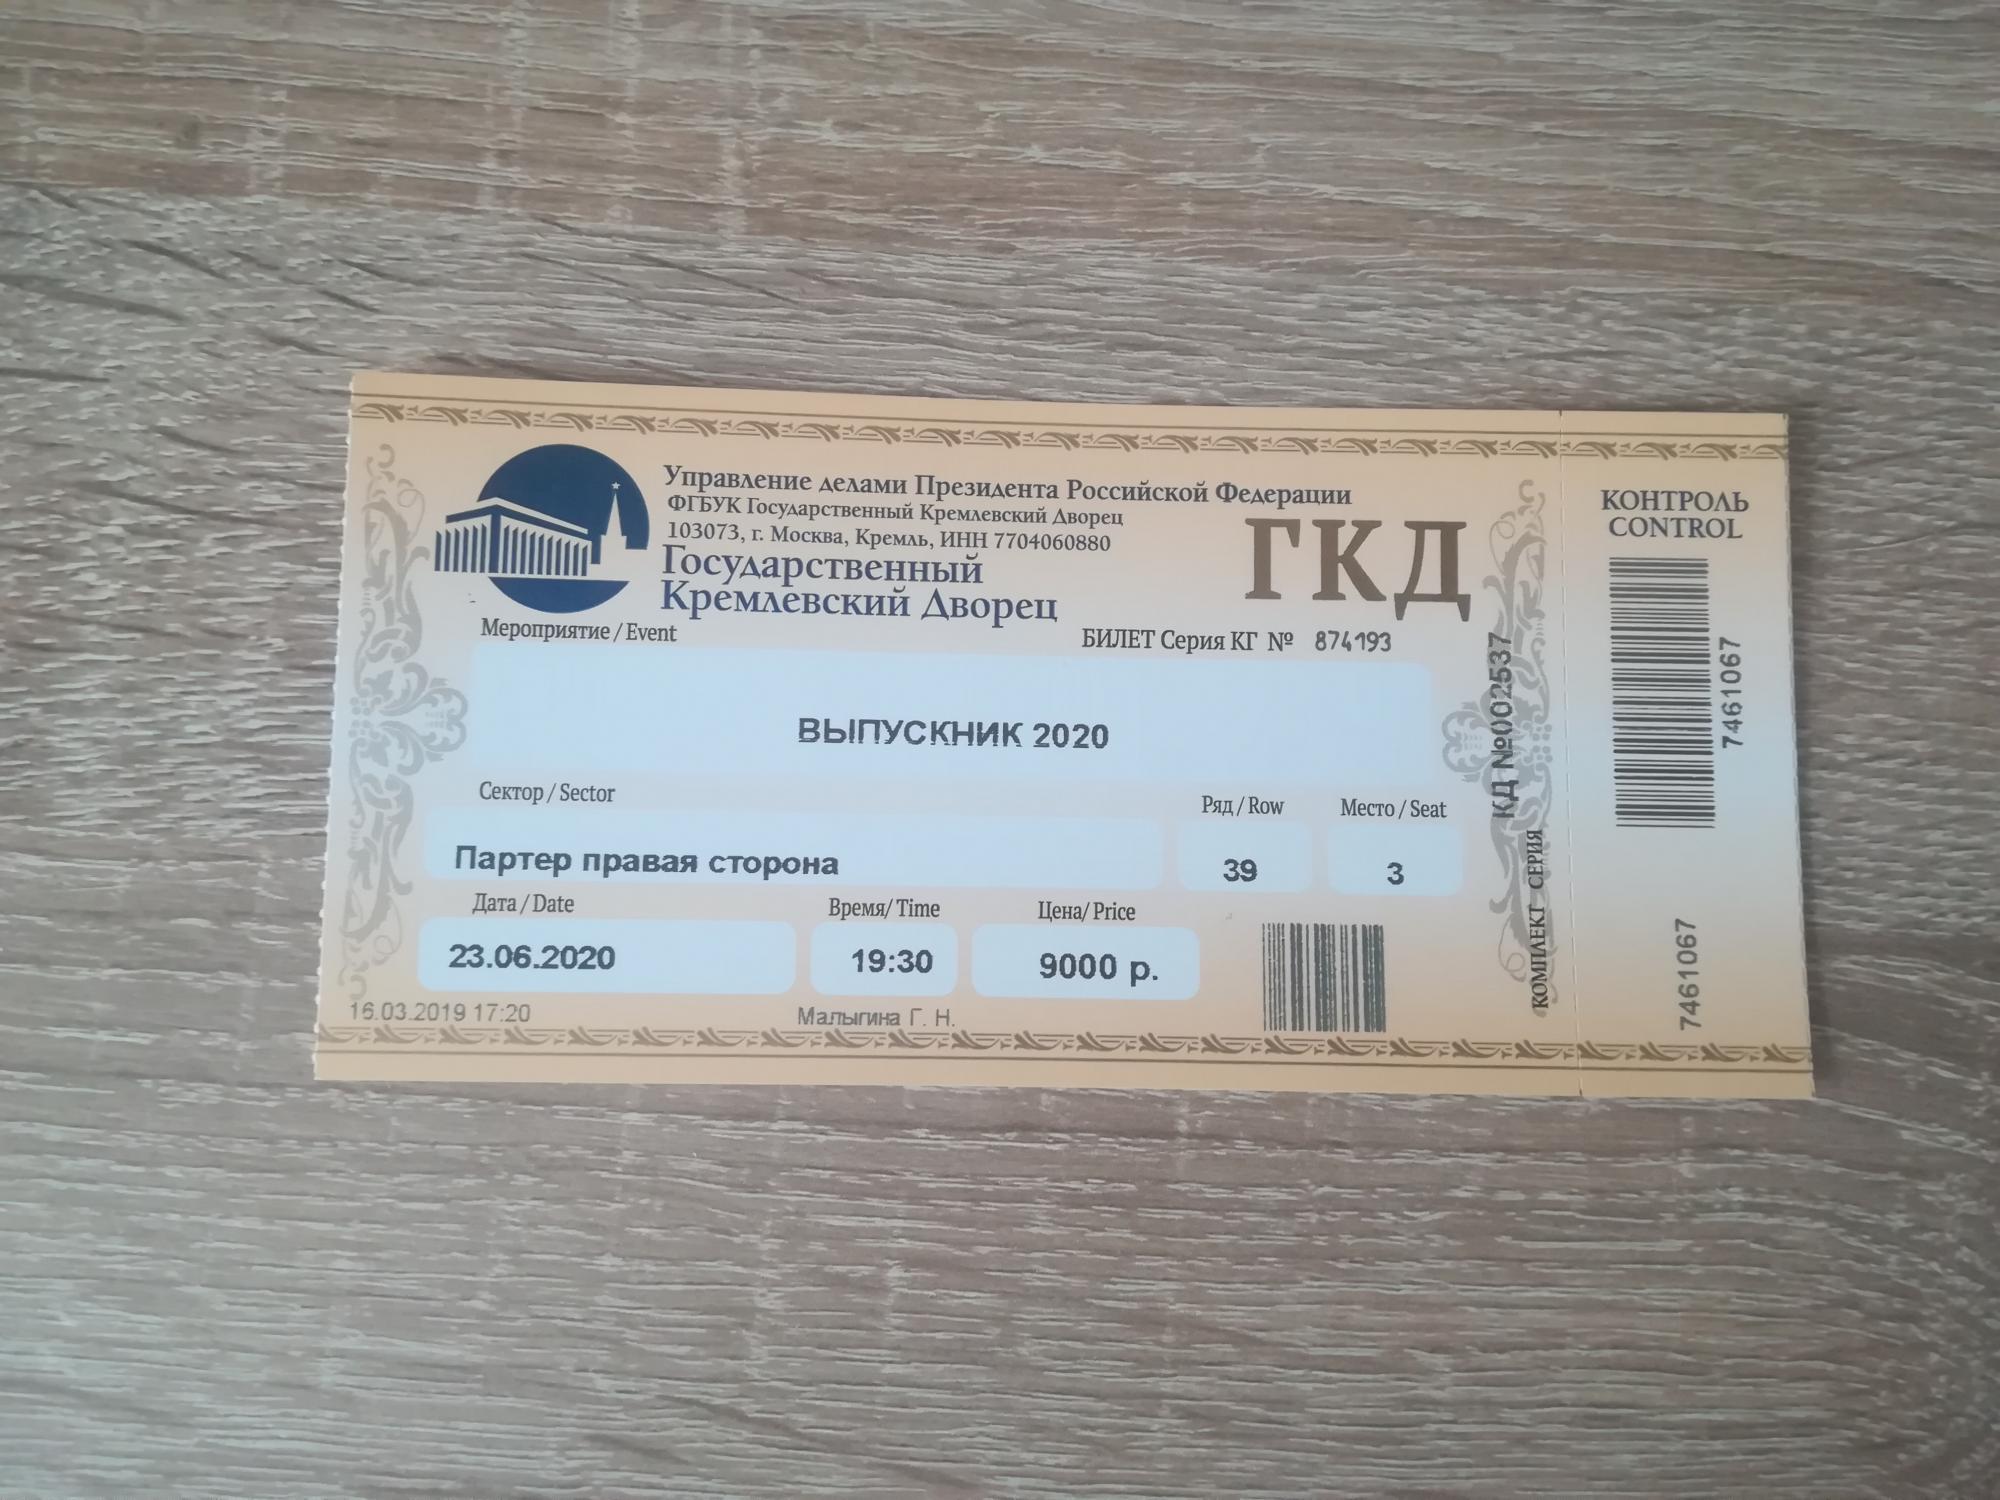 Купить билеты на каток астрахань. Кремлевский дворец билеты. ГКД билеты. Билеты в государственный Кремлевский дворец. Билет на выпускной в Кремле.